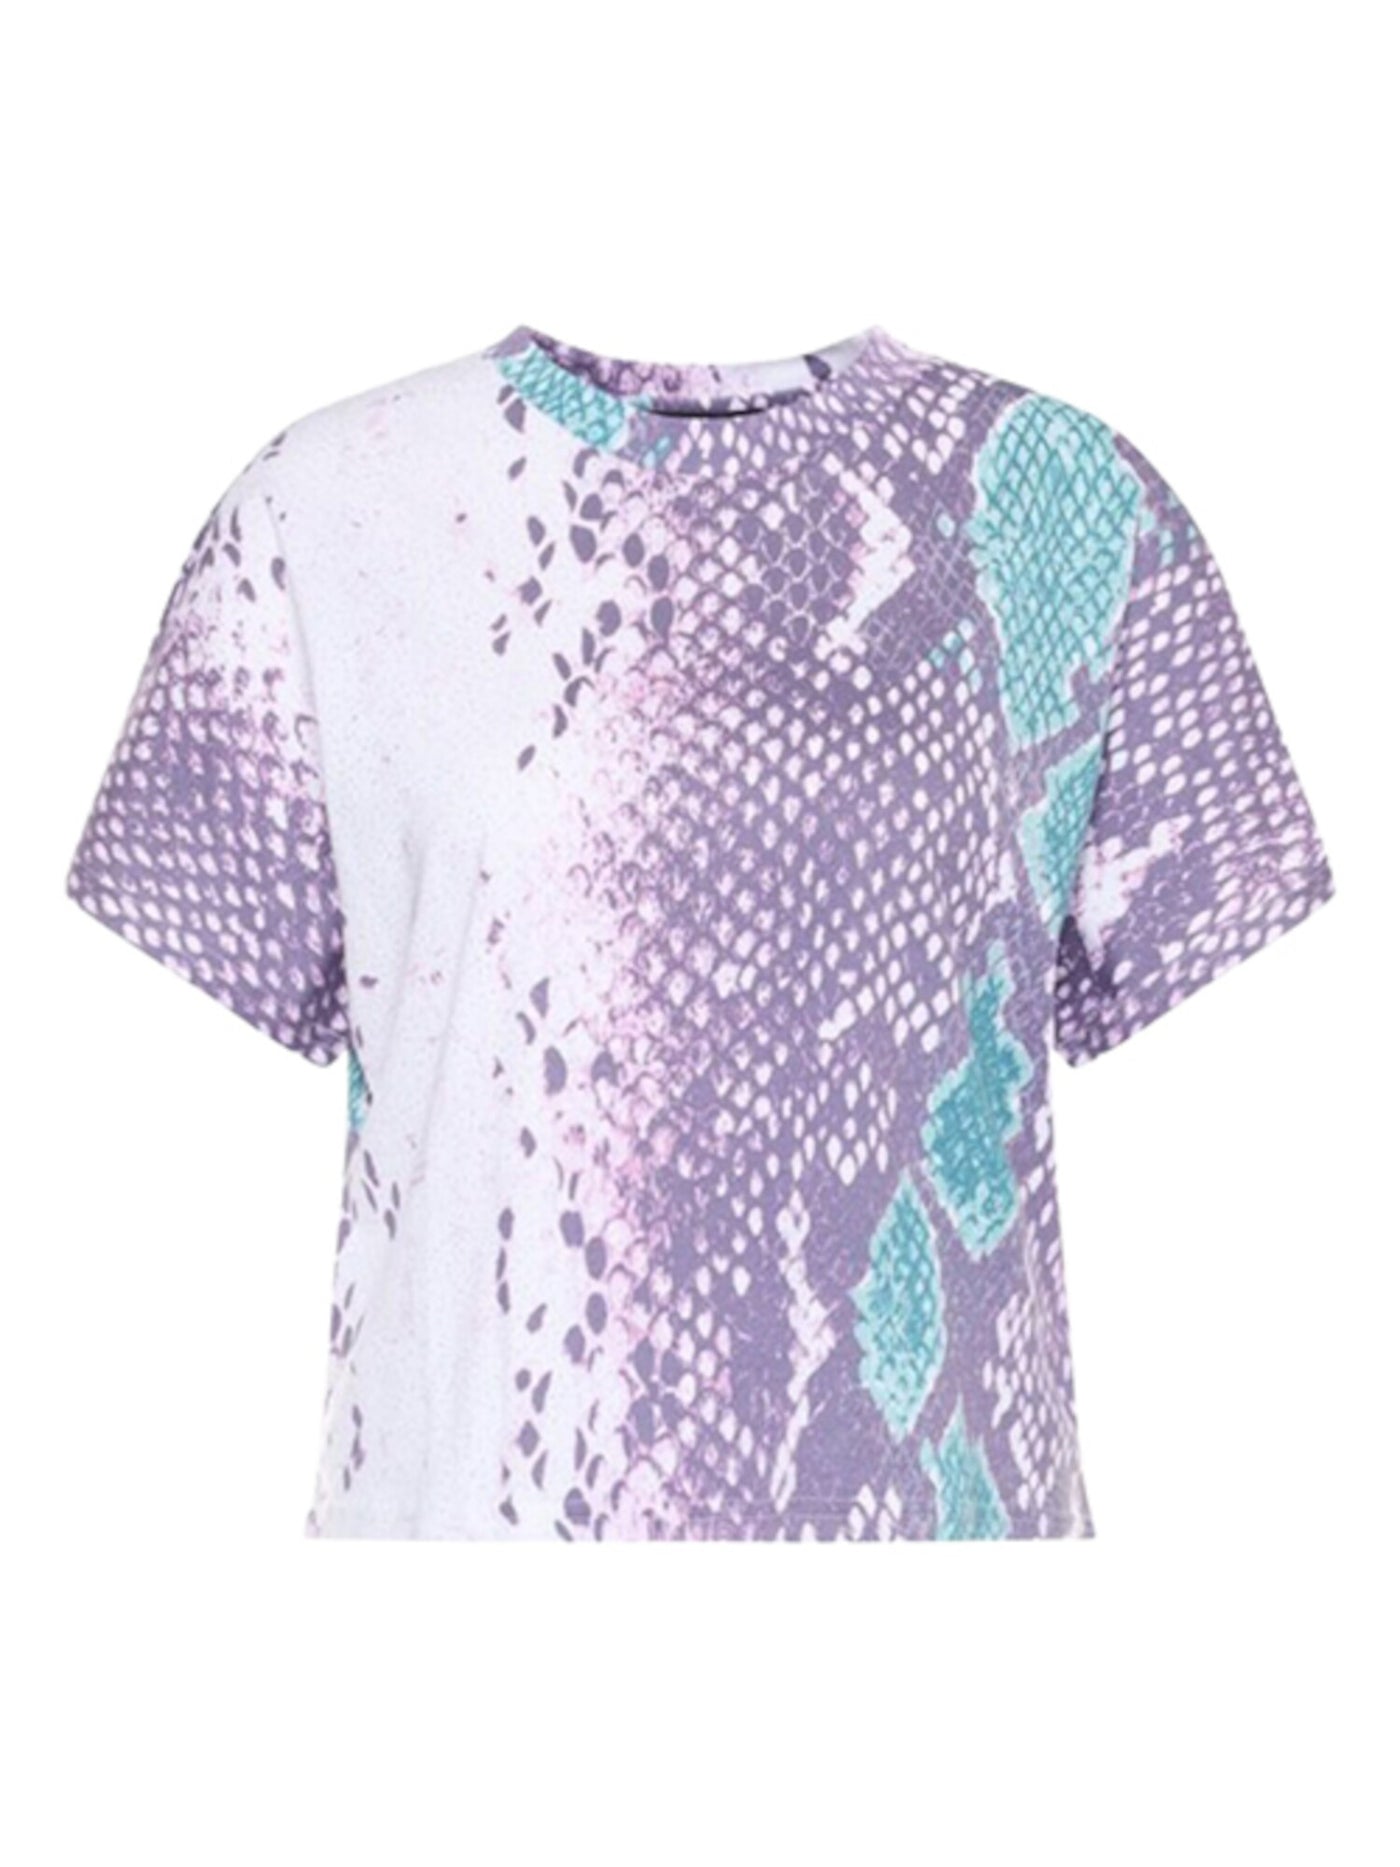 GUESS Womens Purple Glitter Short Sleeve Crew Neck T-Shirt L